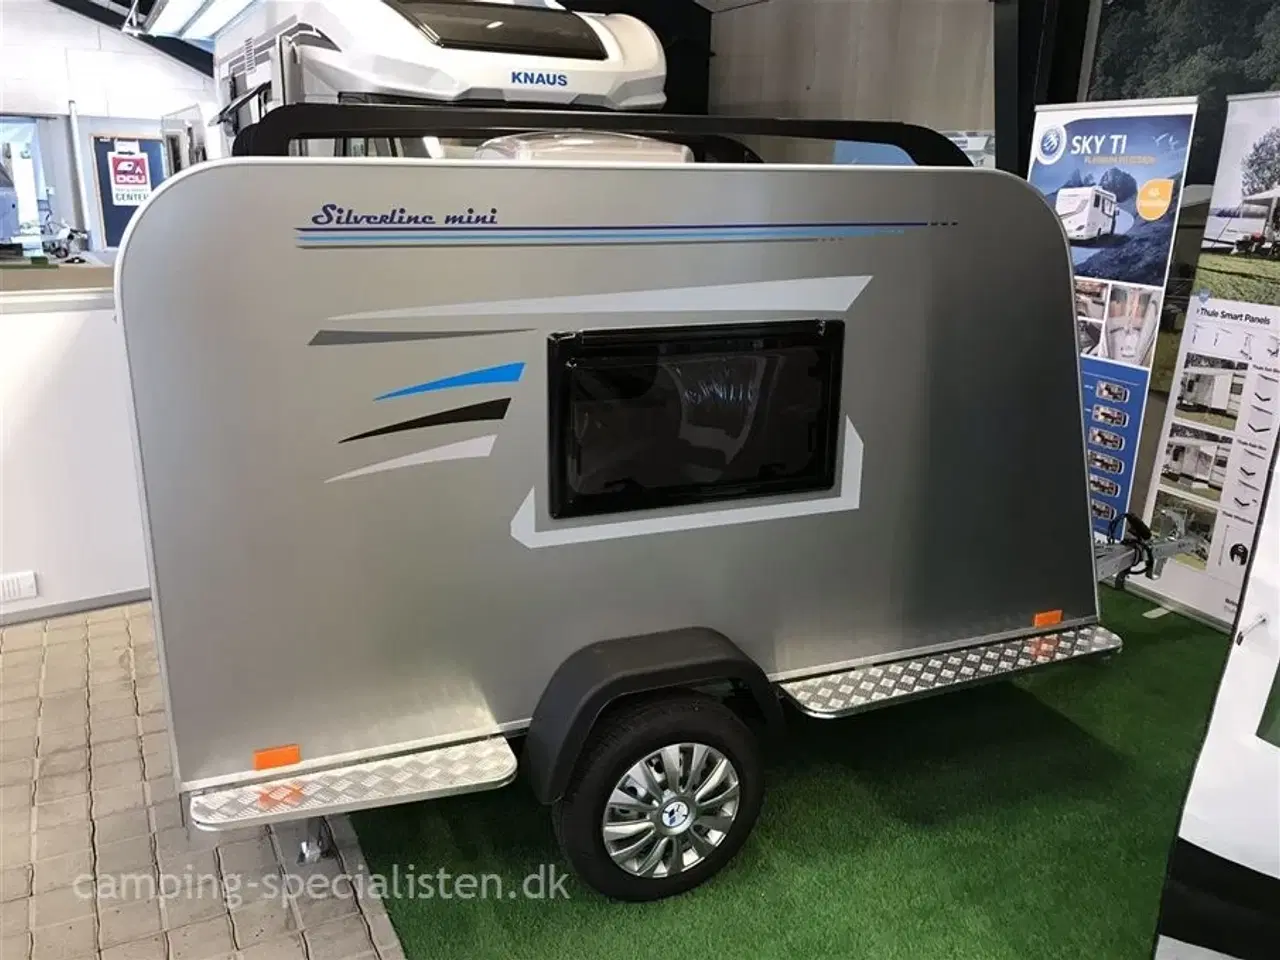 Billede 5 - 2024 - Tomplan Silverline Mini    NY Mini campingvogn Den populære Silverline i model 2024 - dobbelt seng - Camping-Specialisten.dk